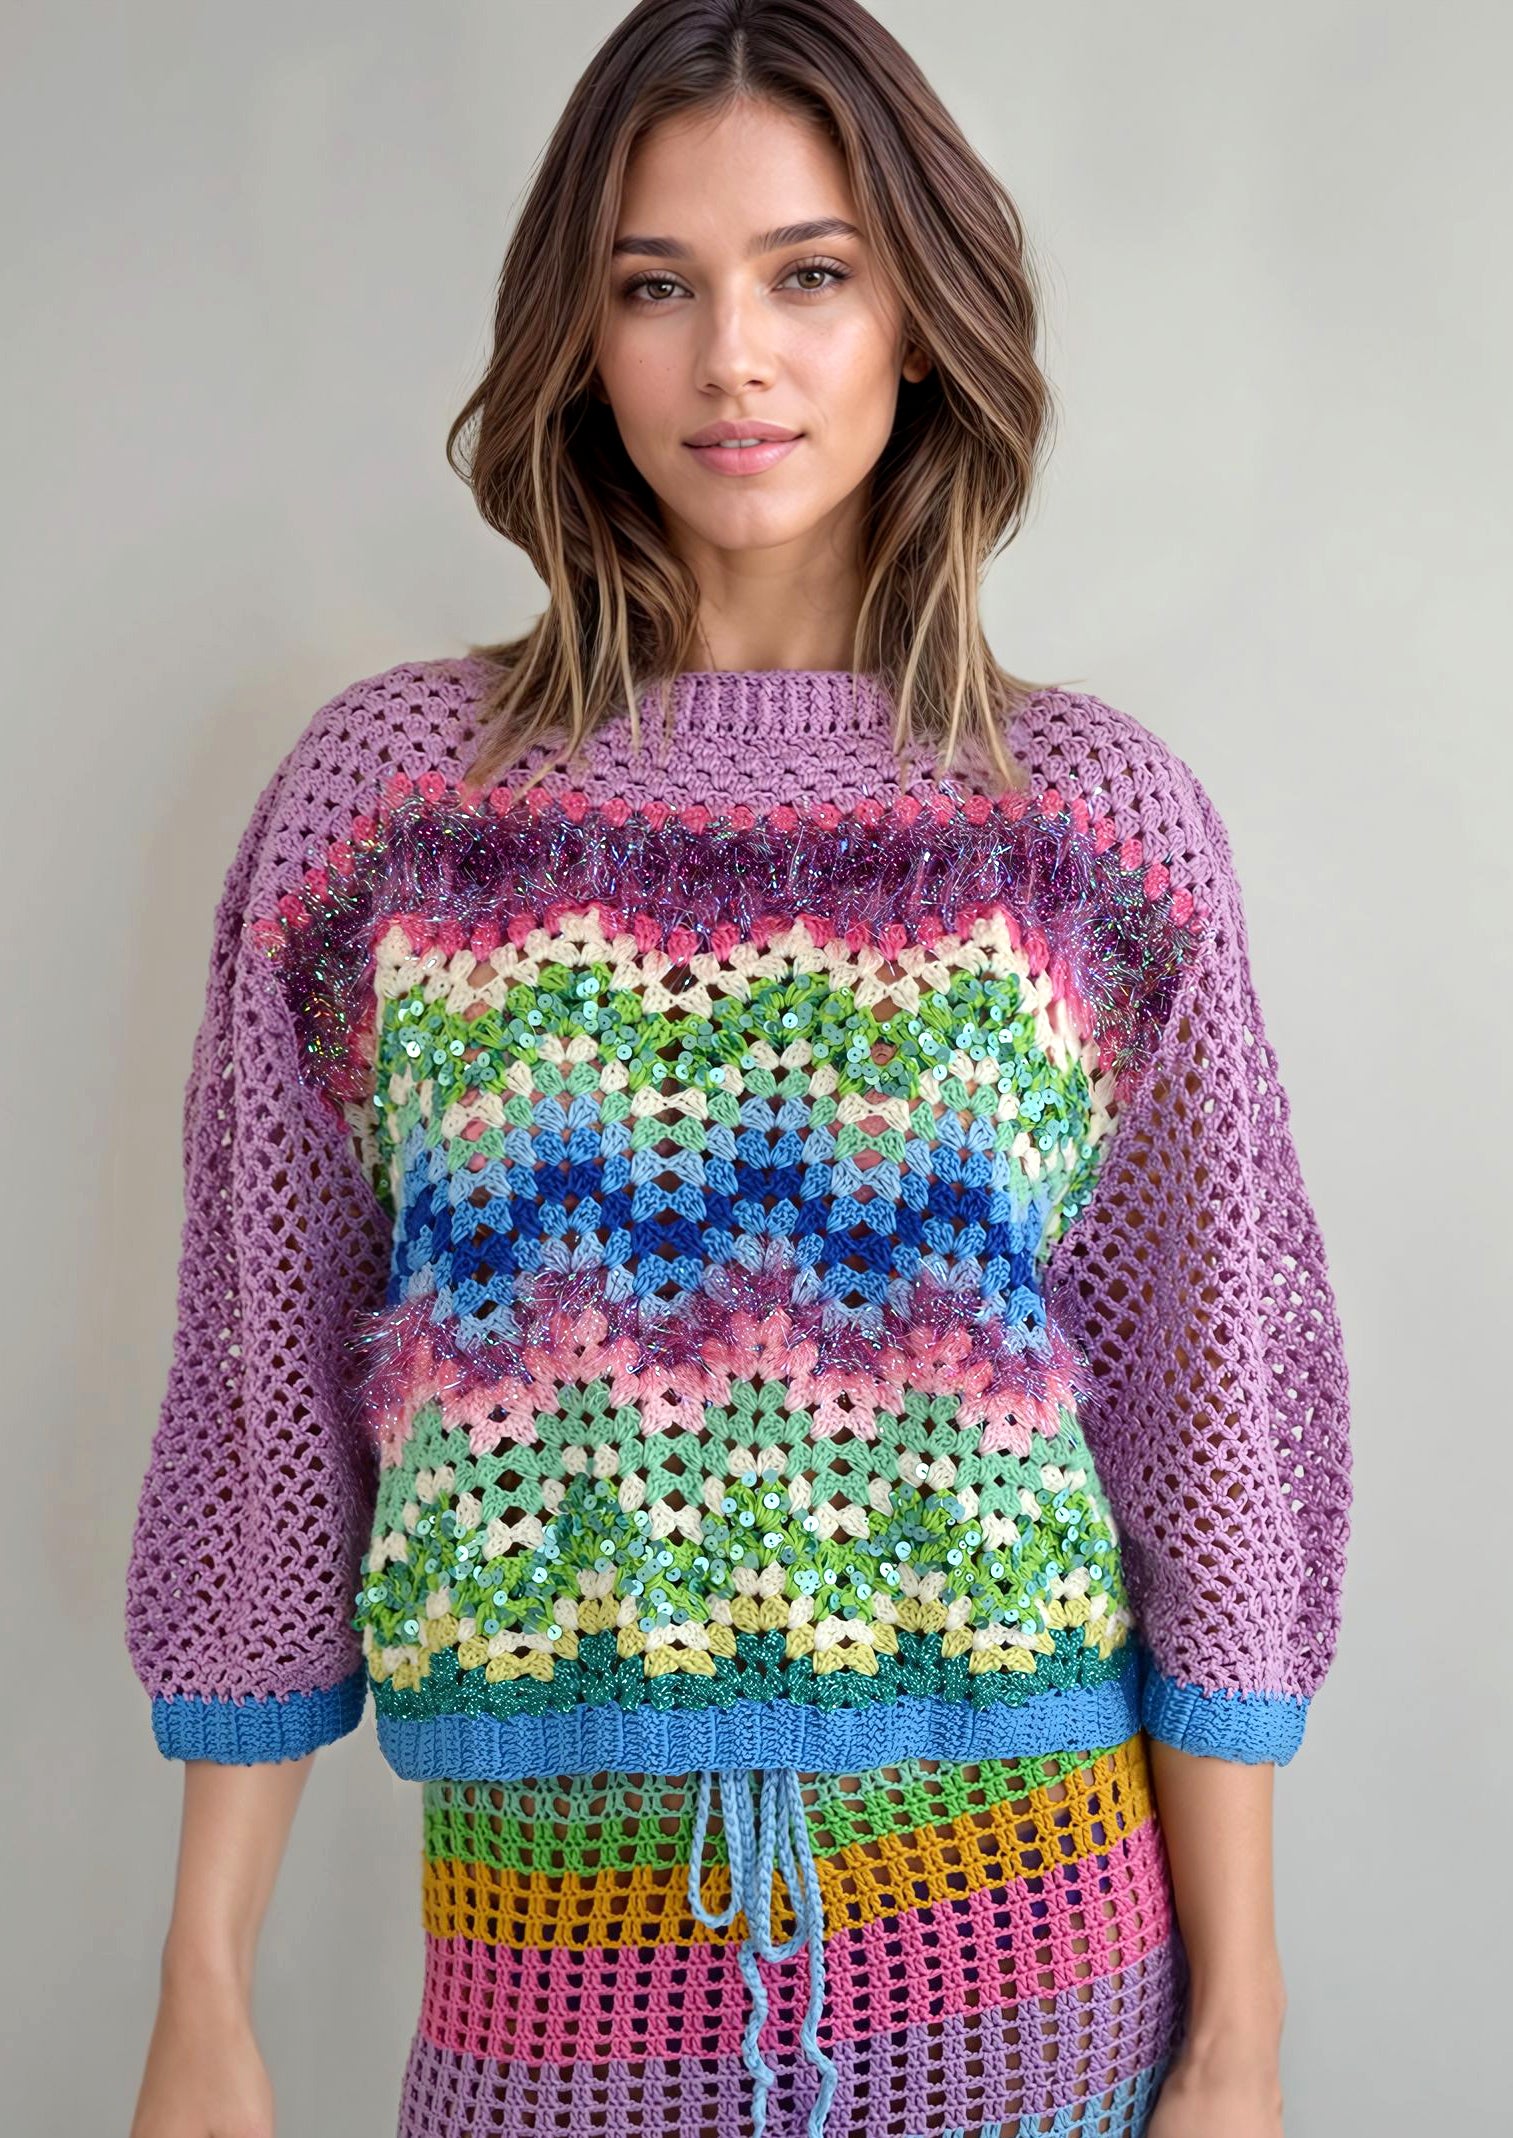 Kathy crochet sweater